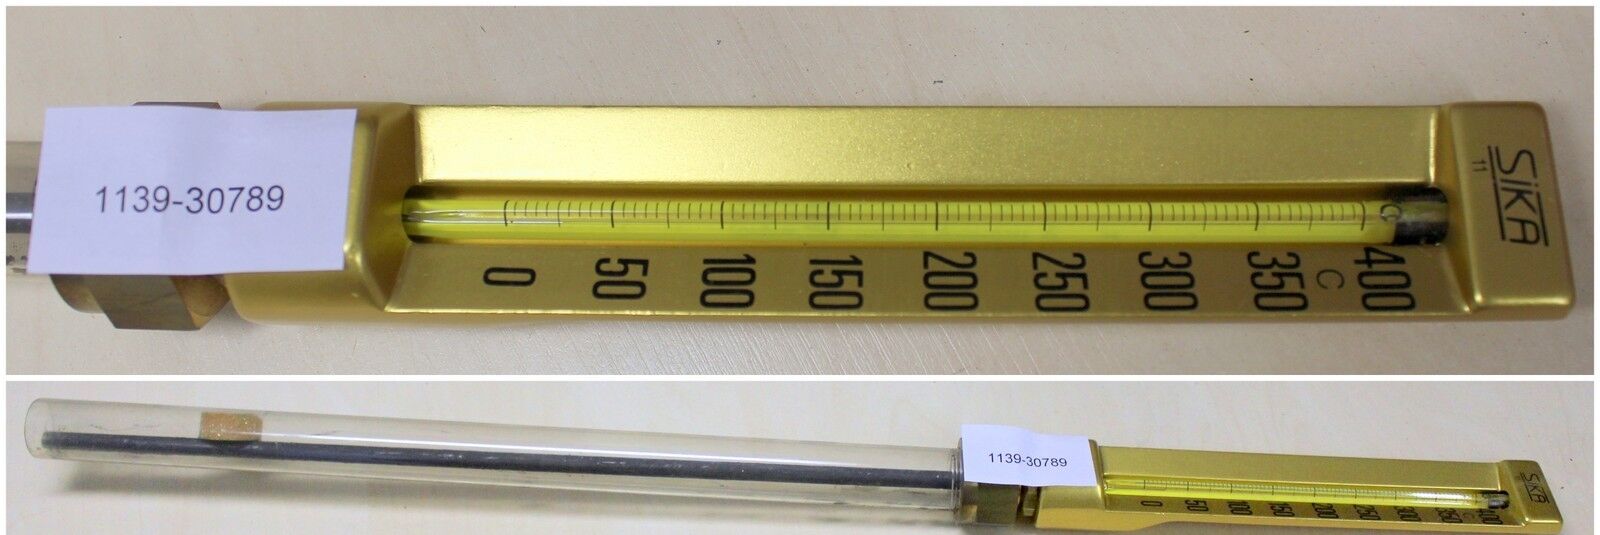 SIKA Thermometer 0-400 °C DIN 16189 TR355, Messstablänge 355mm -NEU-